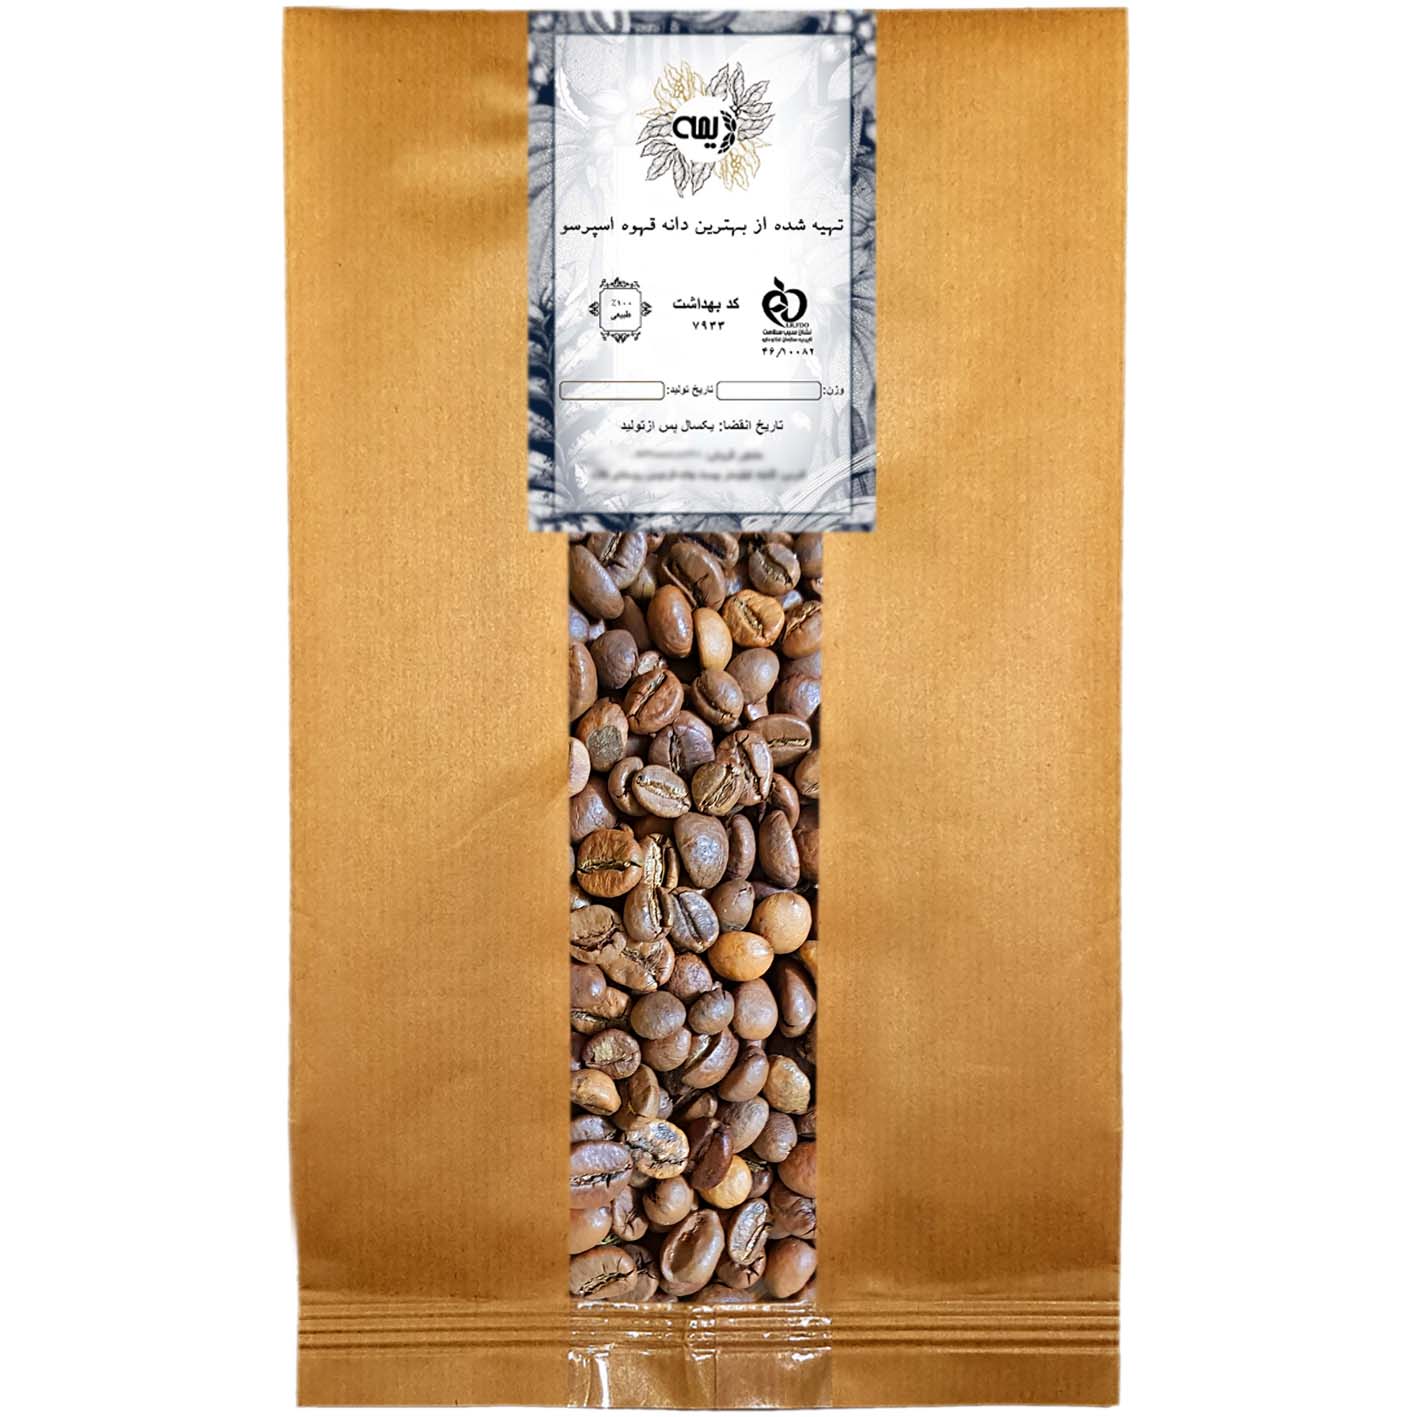 دانه قهوه میکس مدیوم 80%روبوستا 20%عربیکا دیمه - 1 کیلو